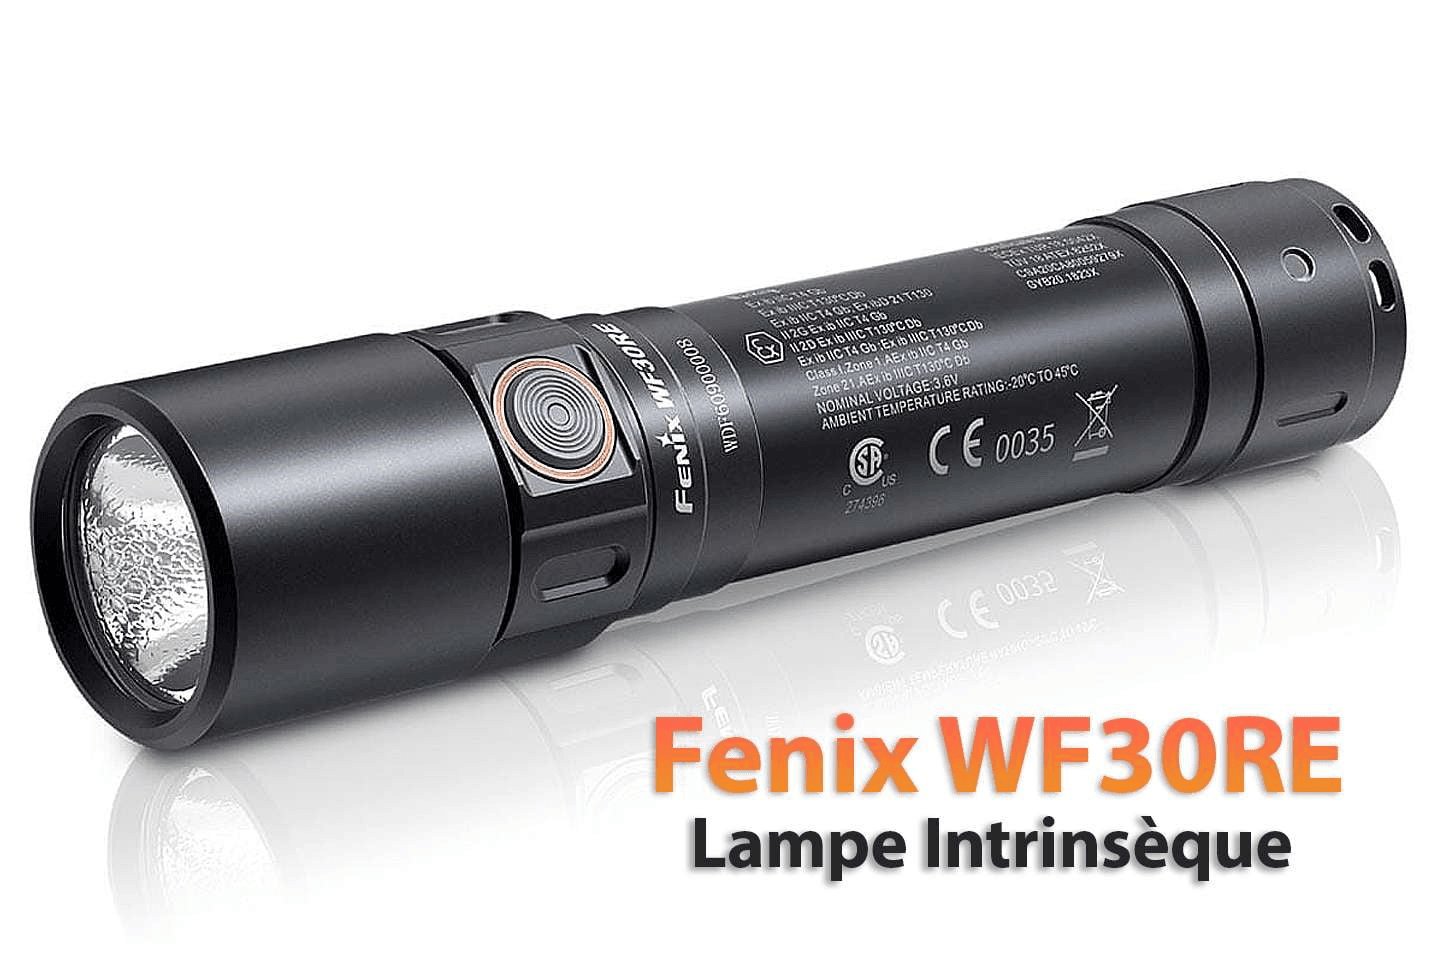 Fenix WF30RE lampe torche à sécurité intrinsèque – Revendeur